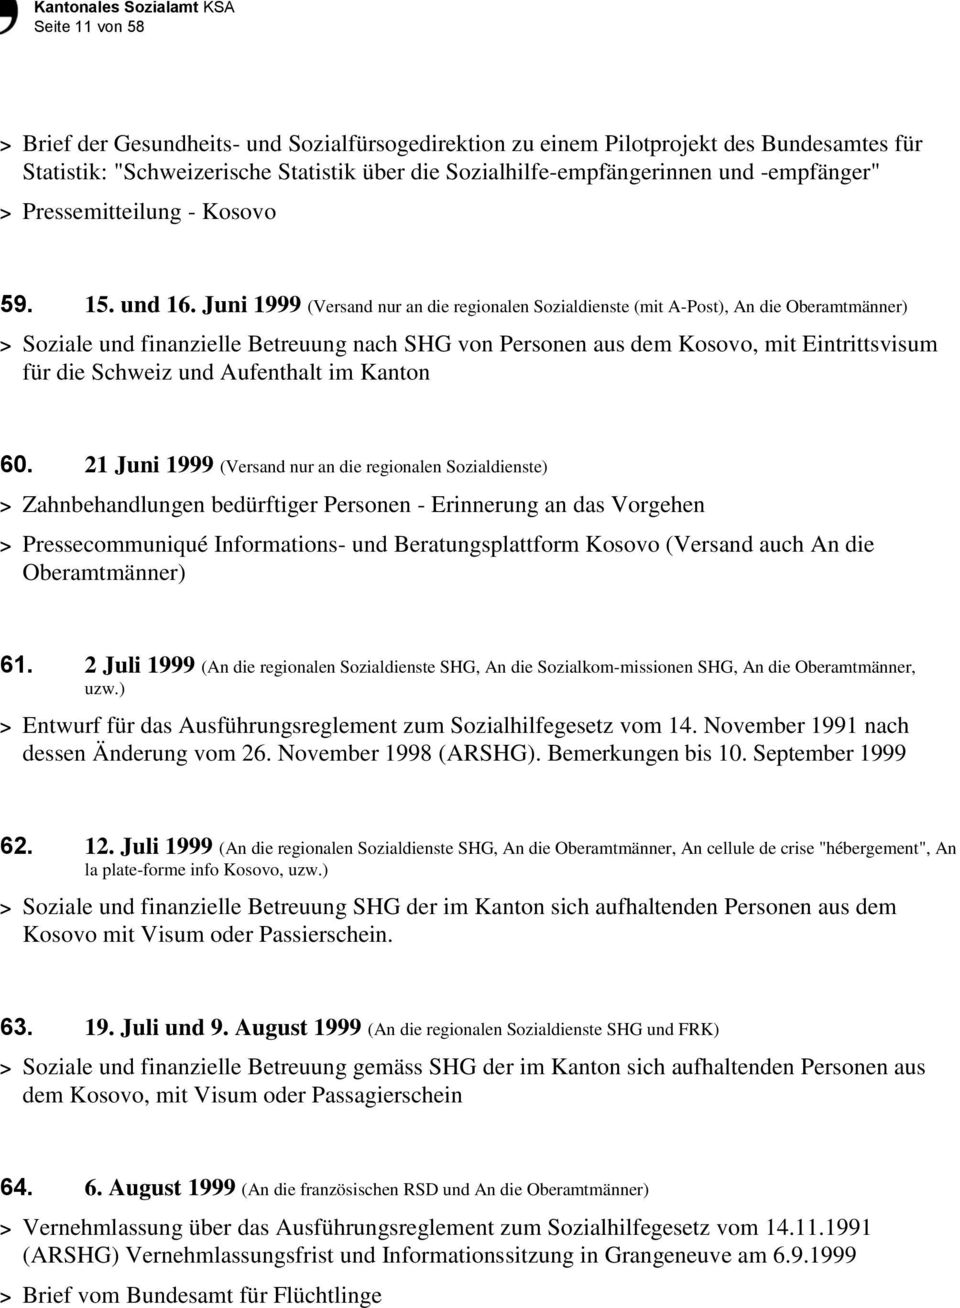 Juni 1999 (Versand nur an die regionalen Sozialdienste (mit A-Post), An die Oberamtmänner) > Soziale und finanzielle Betreuung nach SHG von Personen aus dem Kosovo, mit Eintrittsvisum für die Schweiz